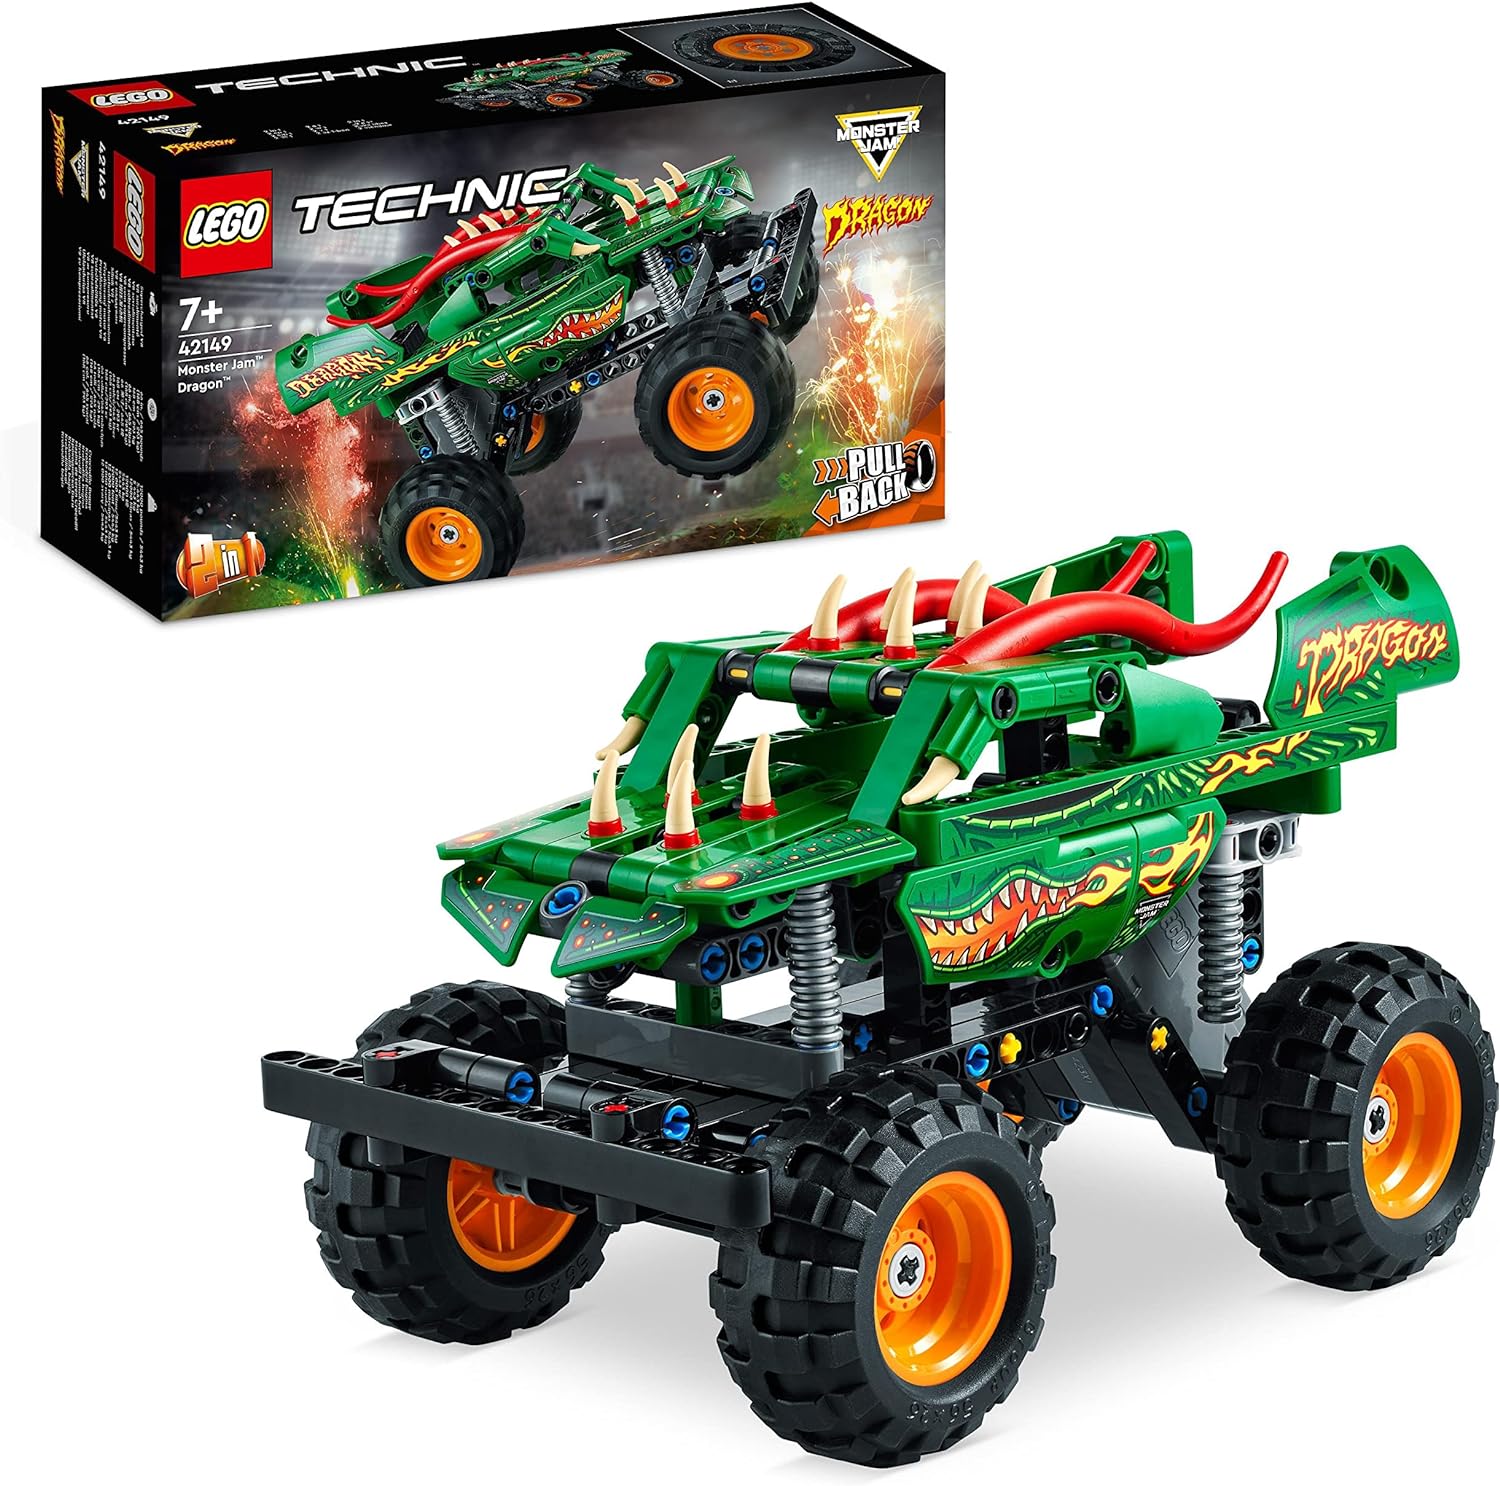 LEGO Technic 42149 Monster-Jam Dragon Monster Truck Spielzeug 2in1-Rennwagen für Offroad-Stunts Auto für Kinder LEGO-Bausteine LEGO-Sets LEGO-Steine Bausteine Sets Steine